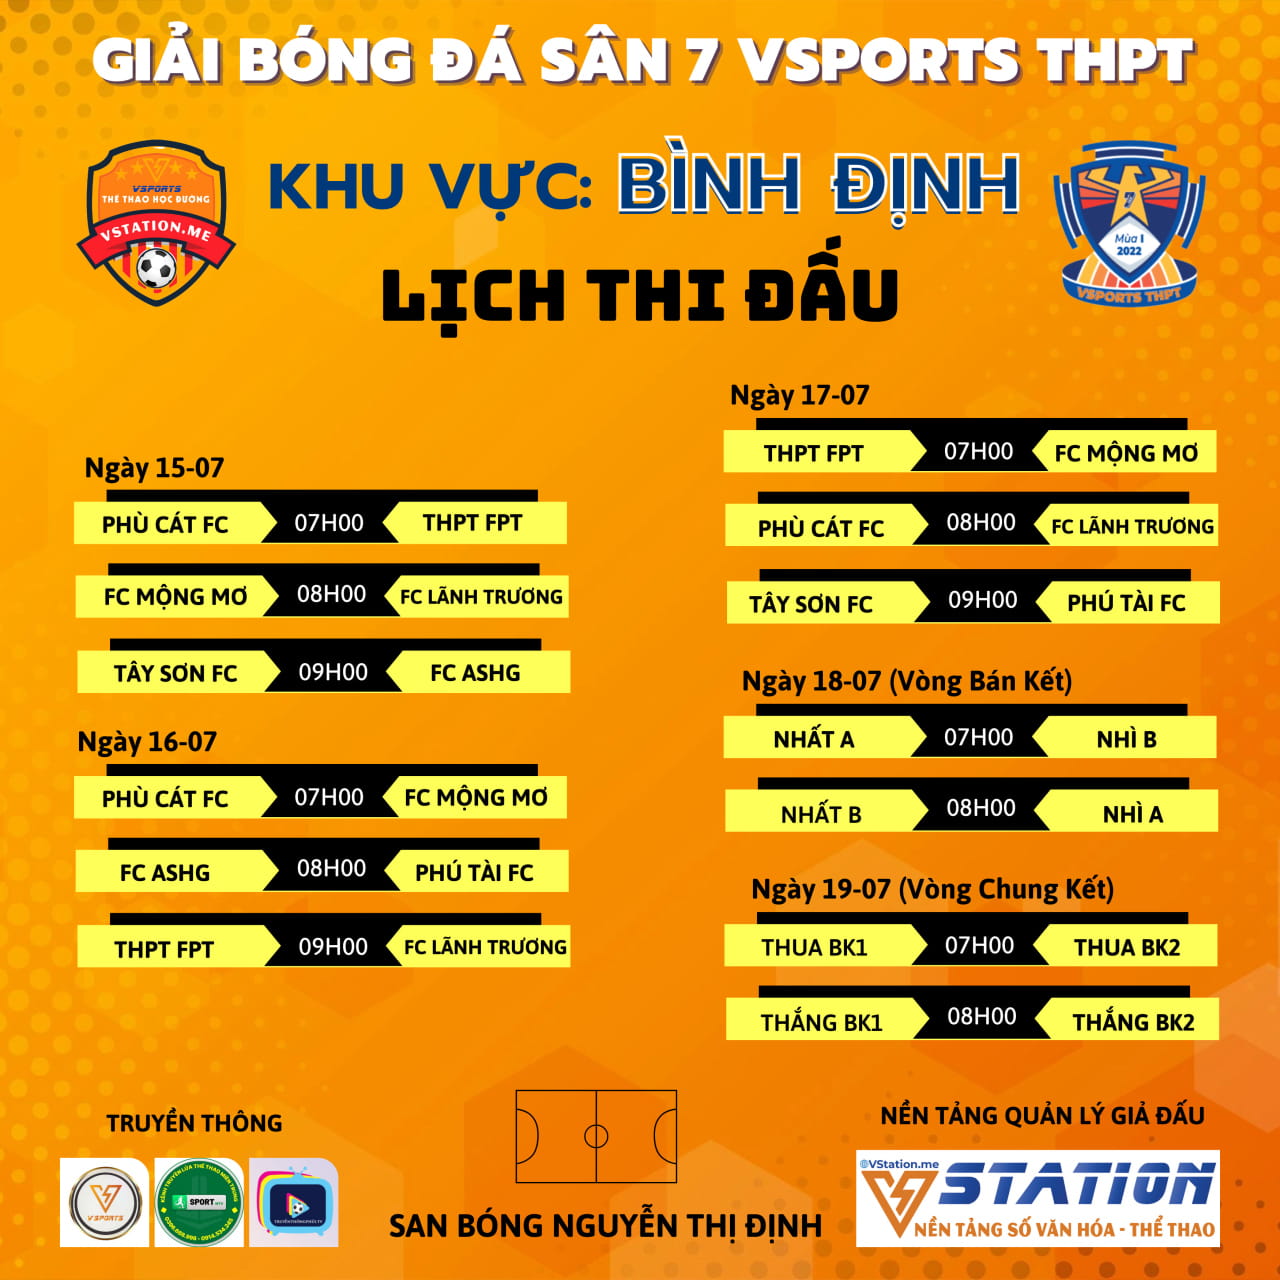 Vsports THPT khu vực Bình Định